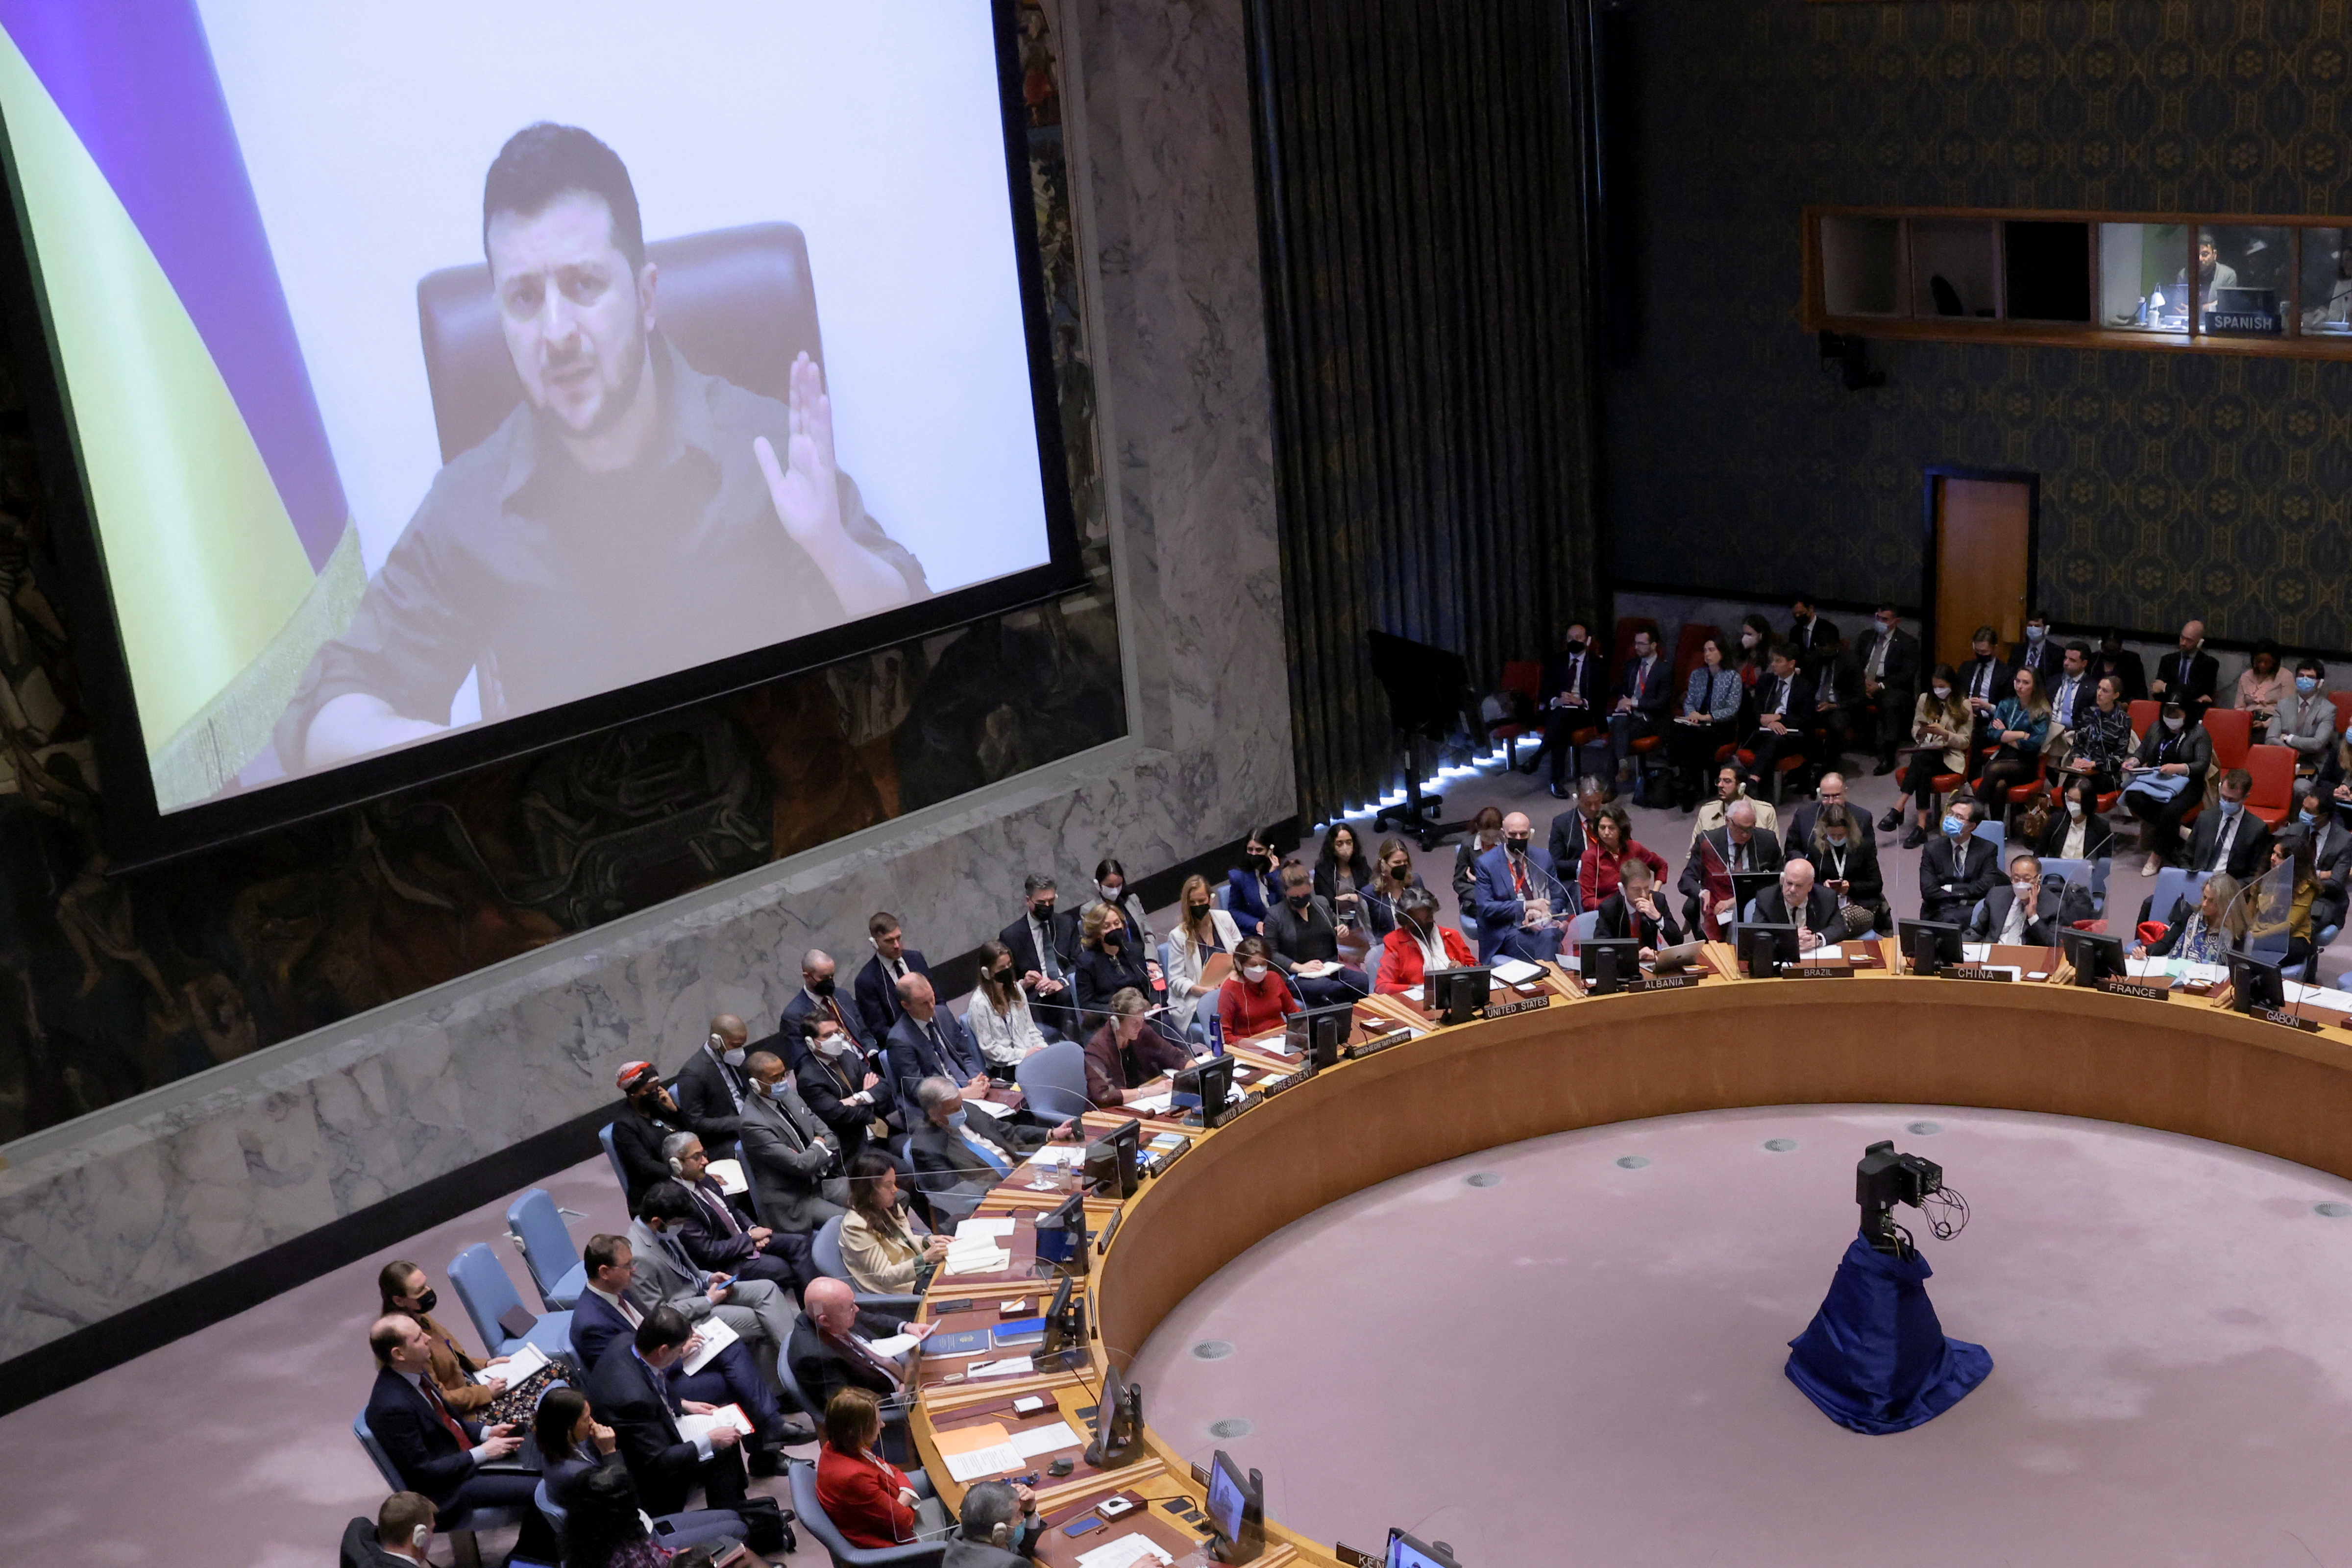 El presidente ucraniano Volodimir Zelensky aparece en una pantalla mientras se dirige al Consejo de Seguridad de las Naciones Unidas a través de una videoconferencia durante una reunión en medio de la invasión rusa de Ucrania, en la sede de las Naciones Unidas en Nueva York, Estados Unidos (Reuters)